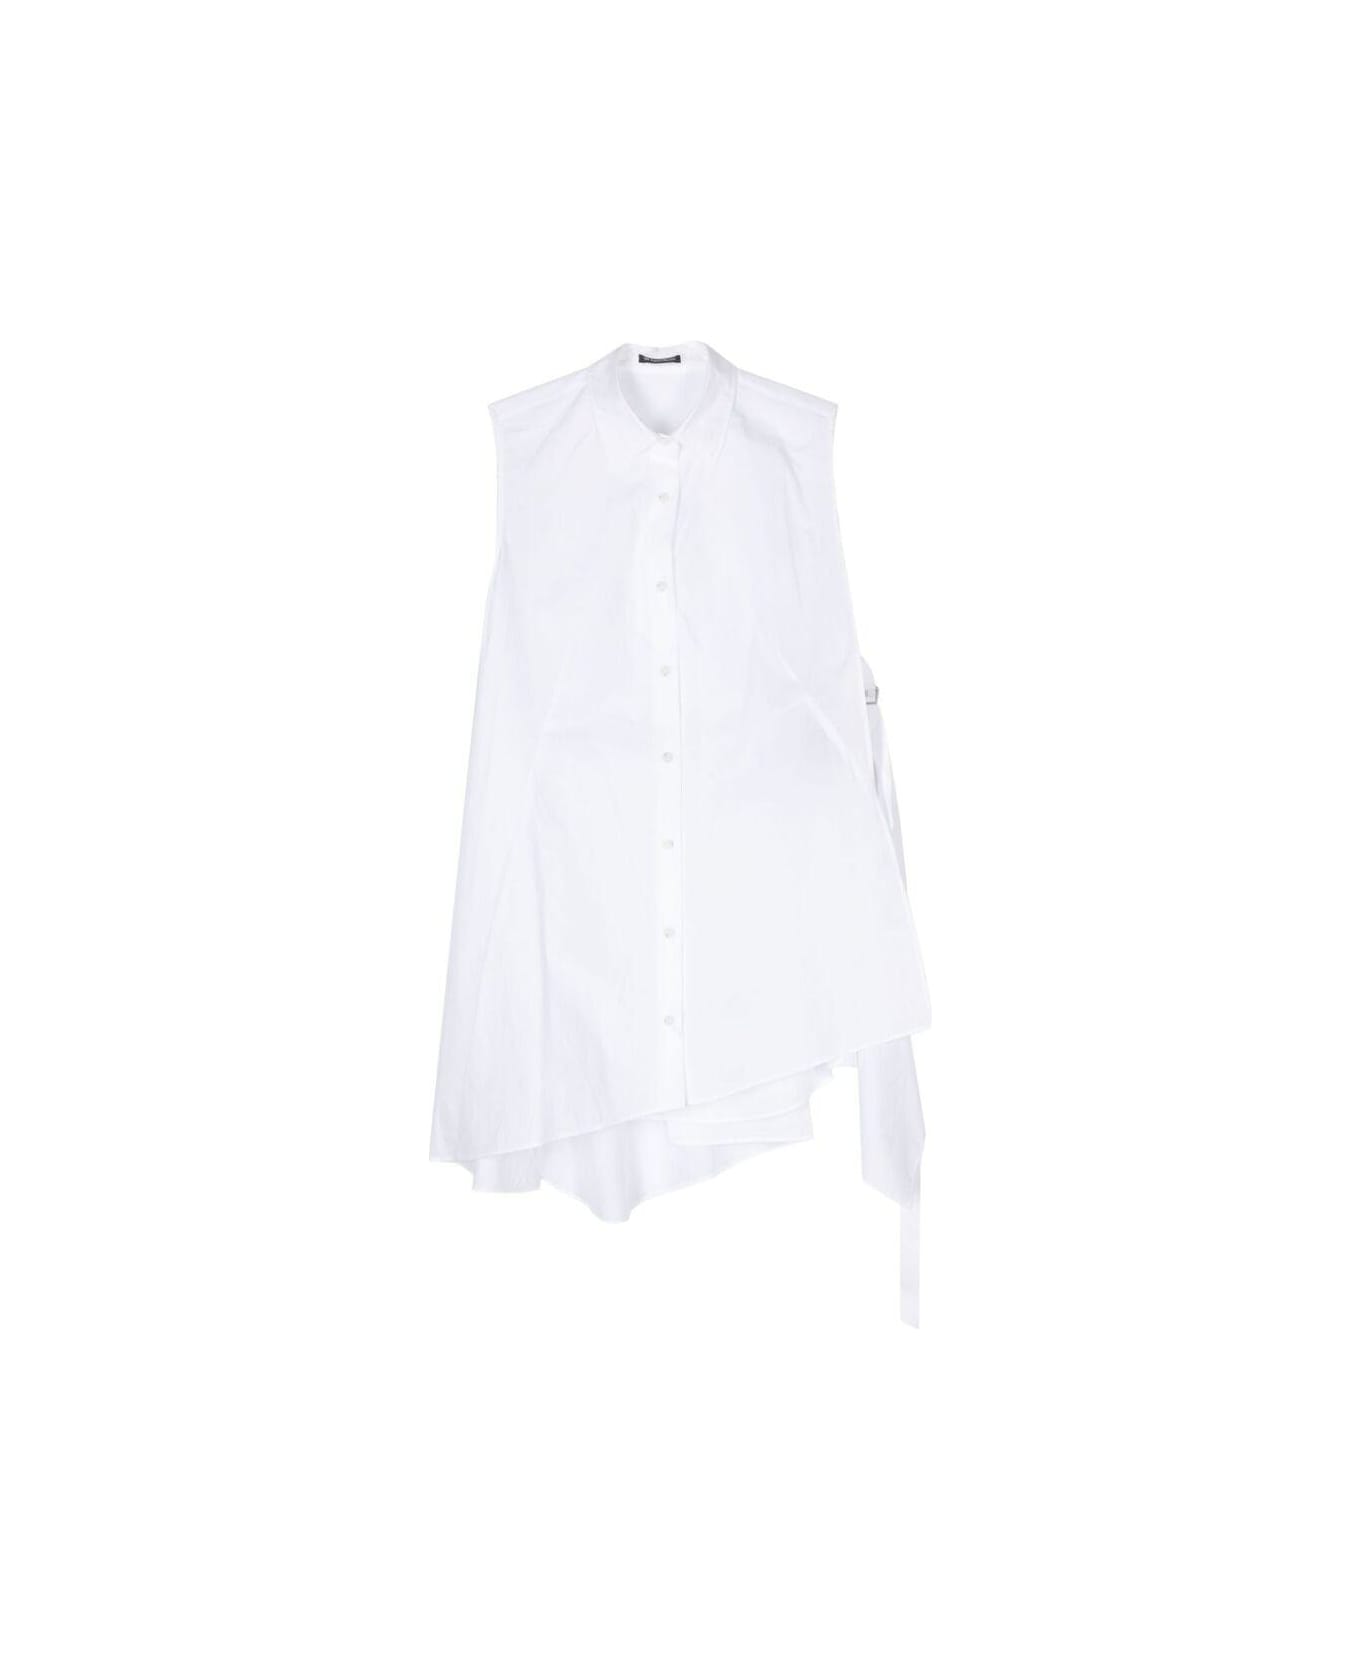 Ann Demeulemeester Sleeveless Shirt - WHITE シャツ